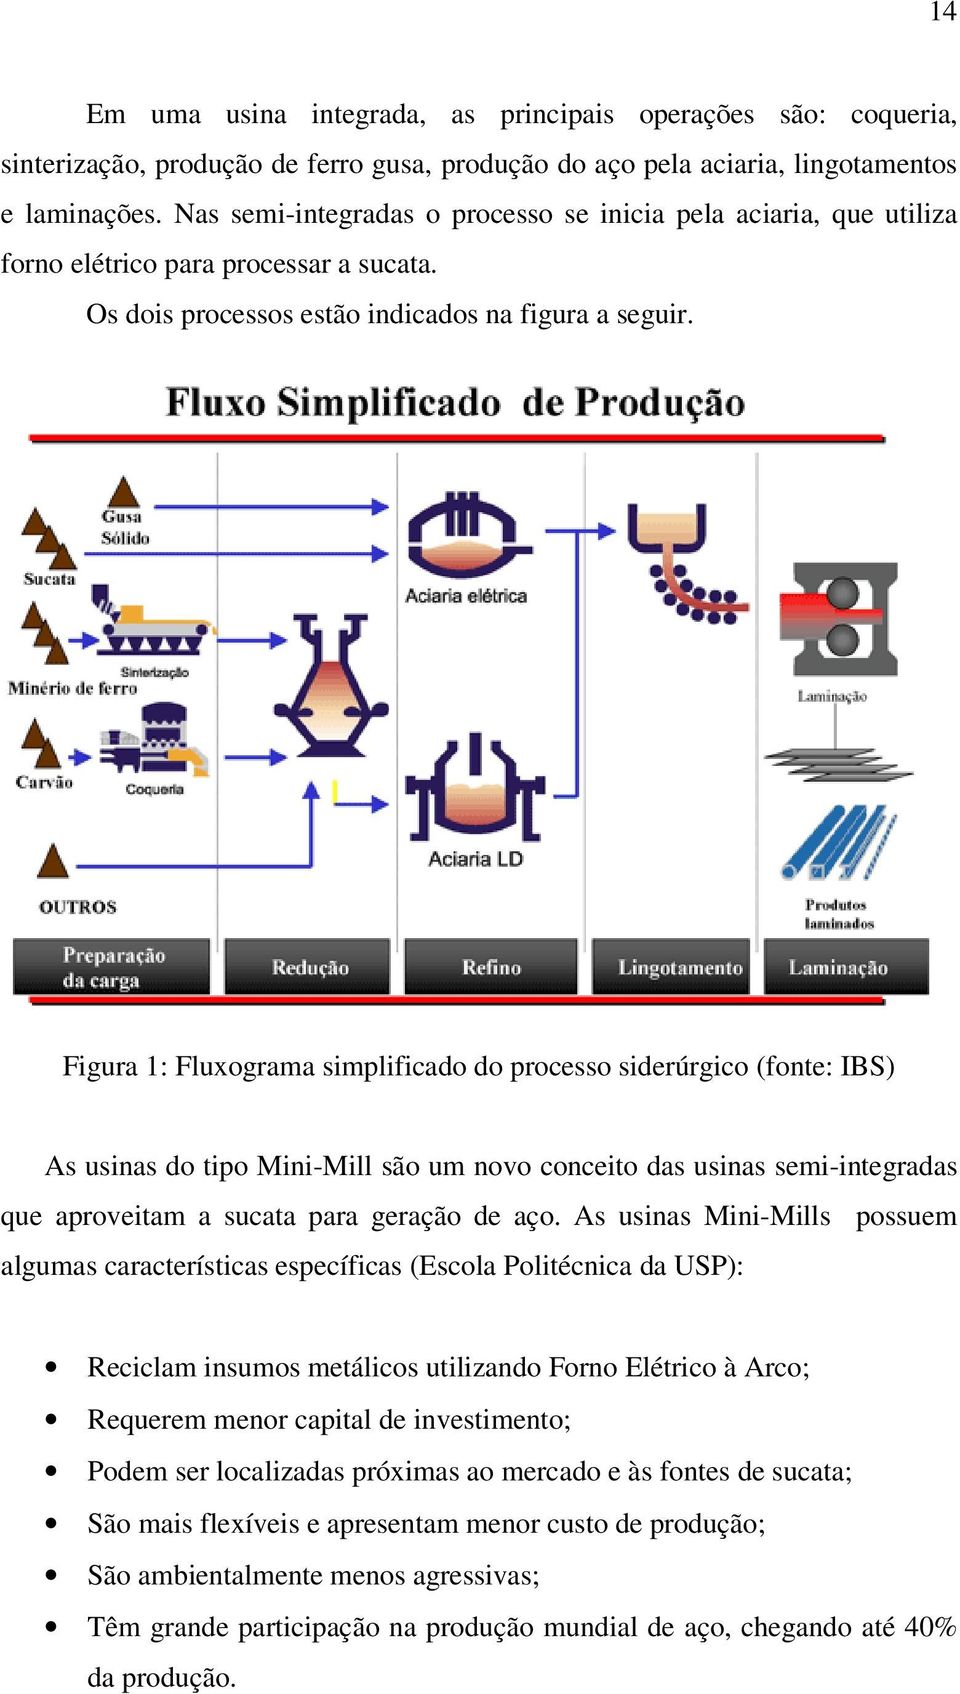 Figura 1: Fluxograma simplificado do processo siderúrgico (fonte: IBS) As usinas do tipo Mini-Mill são um novo conceito das usinas semi-integradas que aproveitam a sucata para geração de aço.